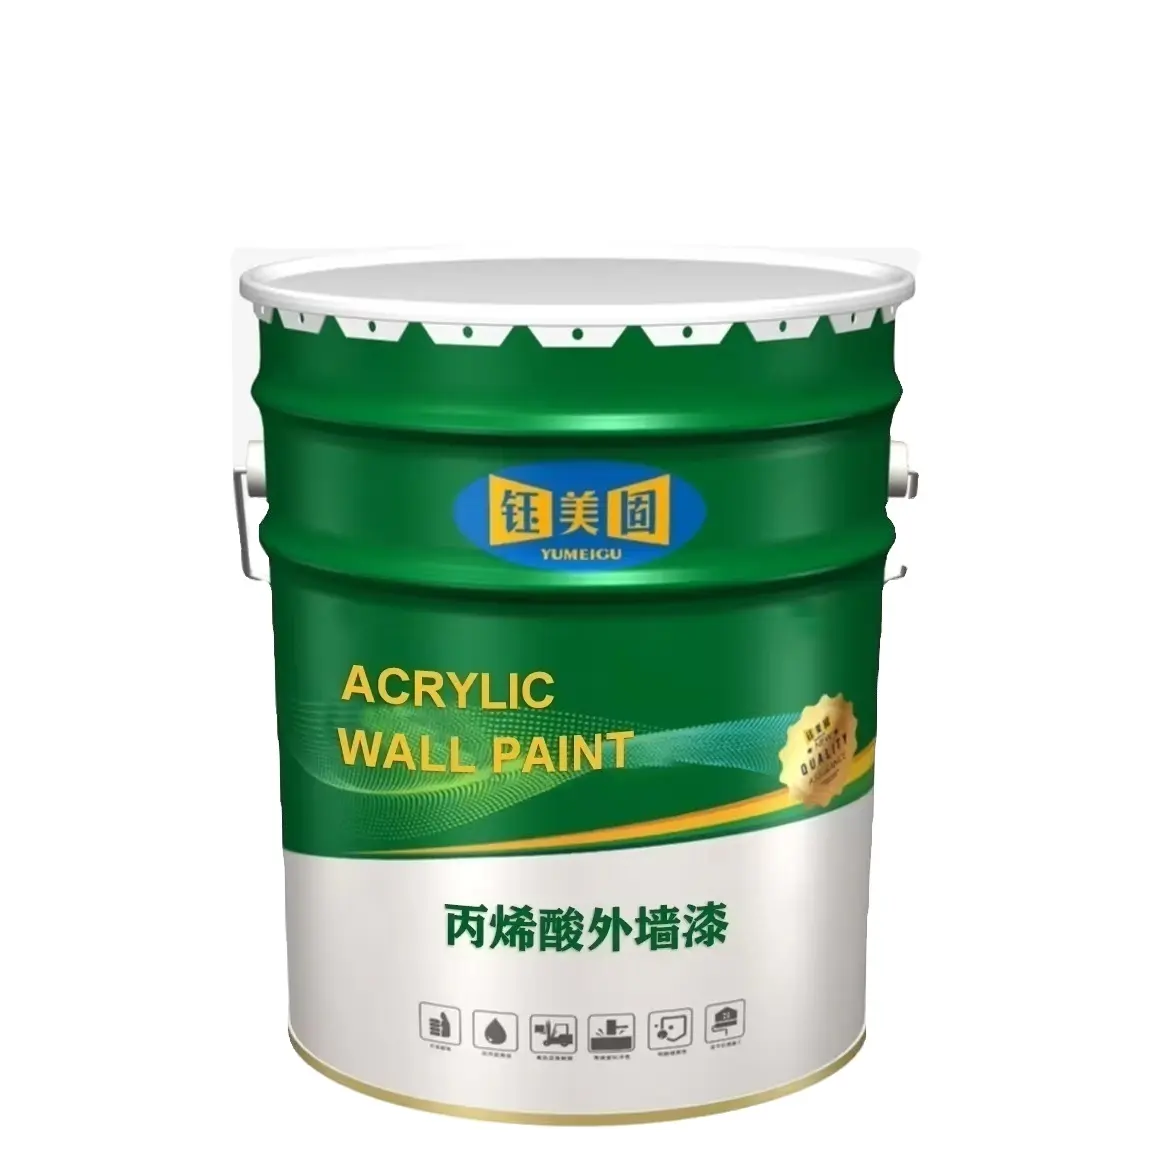 TC0006 Экологически чистая акриловая керамика, наружная краска для стен, жидкое строительное покрытие с Порошковым внешним видом